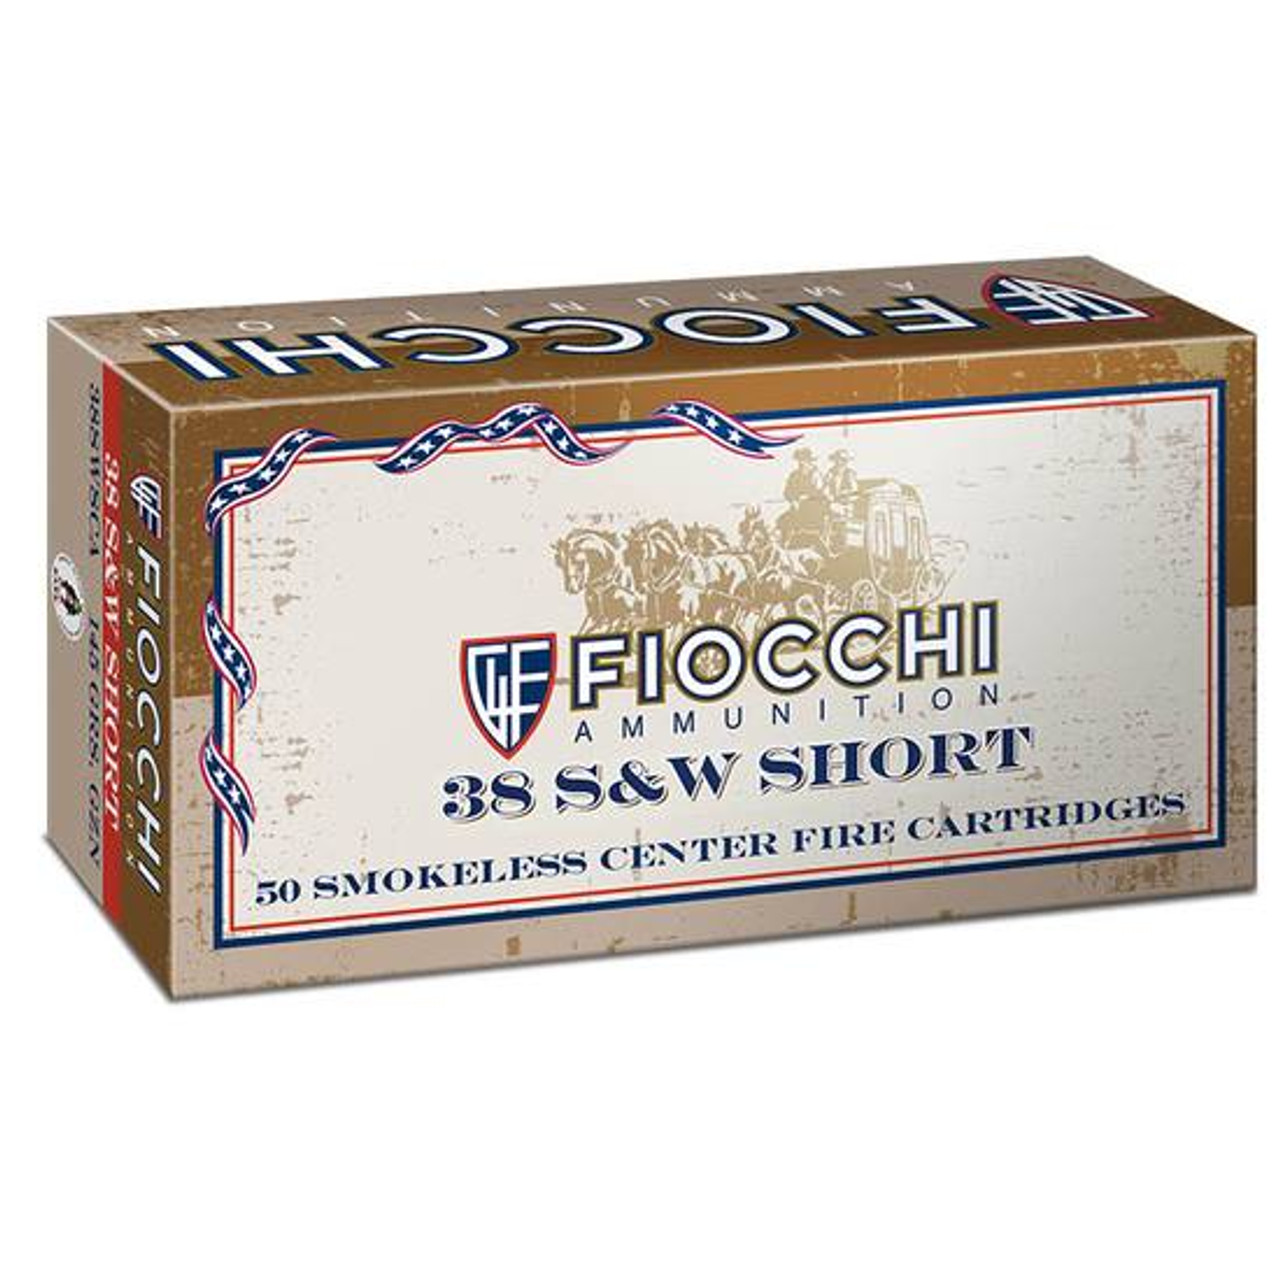 Fiocchi Cowboy Action .38 S&W Short Ammunition 50 Rounds Lead